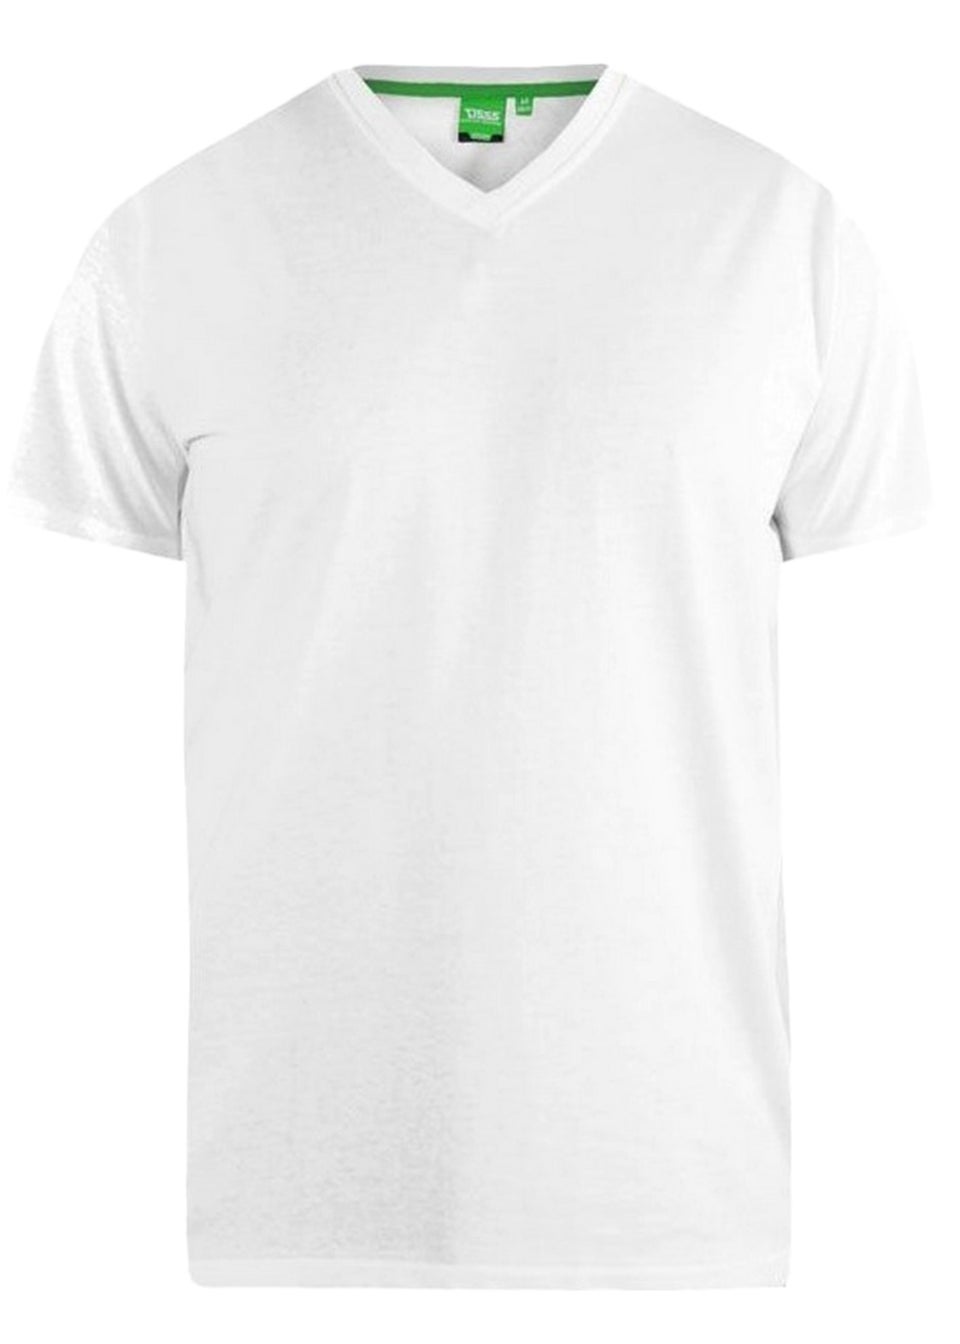 Duke Grey/White Fenton Kingsize Round Neck T-shirts (Pack of 2)